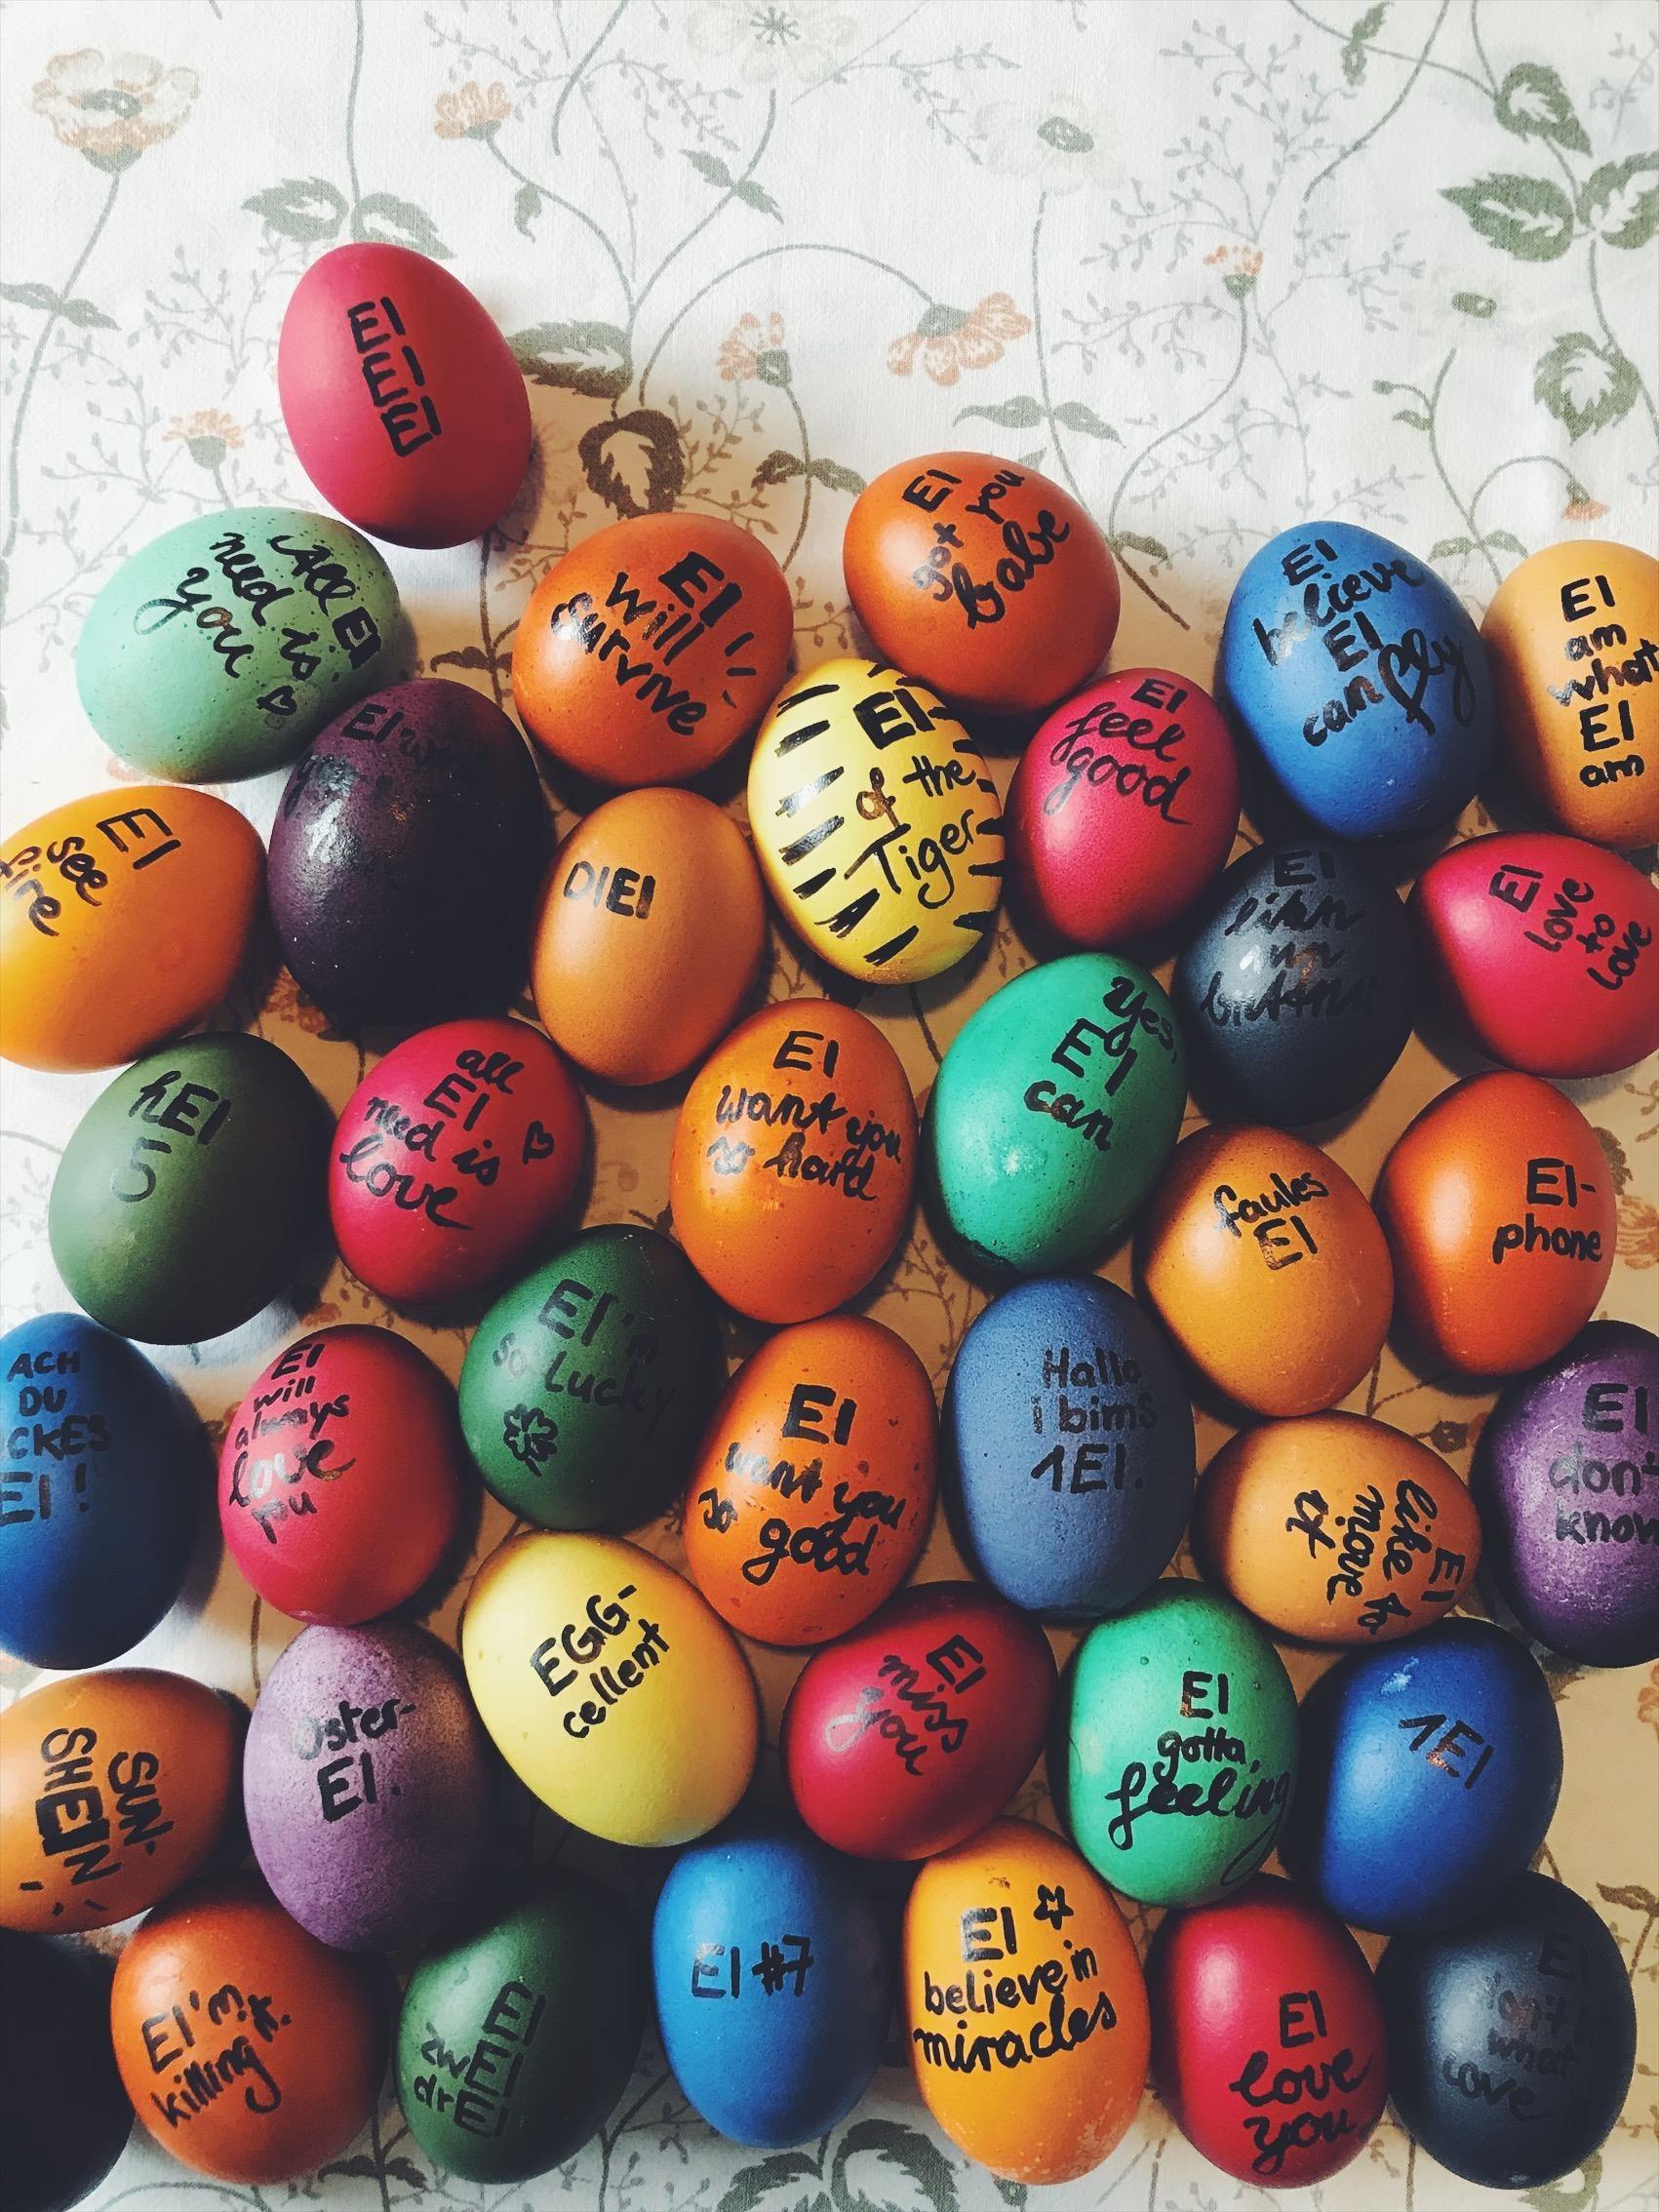 Happy Easter #eier #diy #ostern #ostereier #handlettering #edding